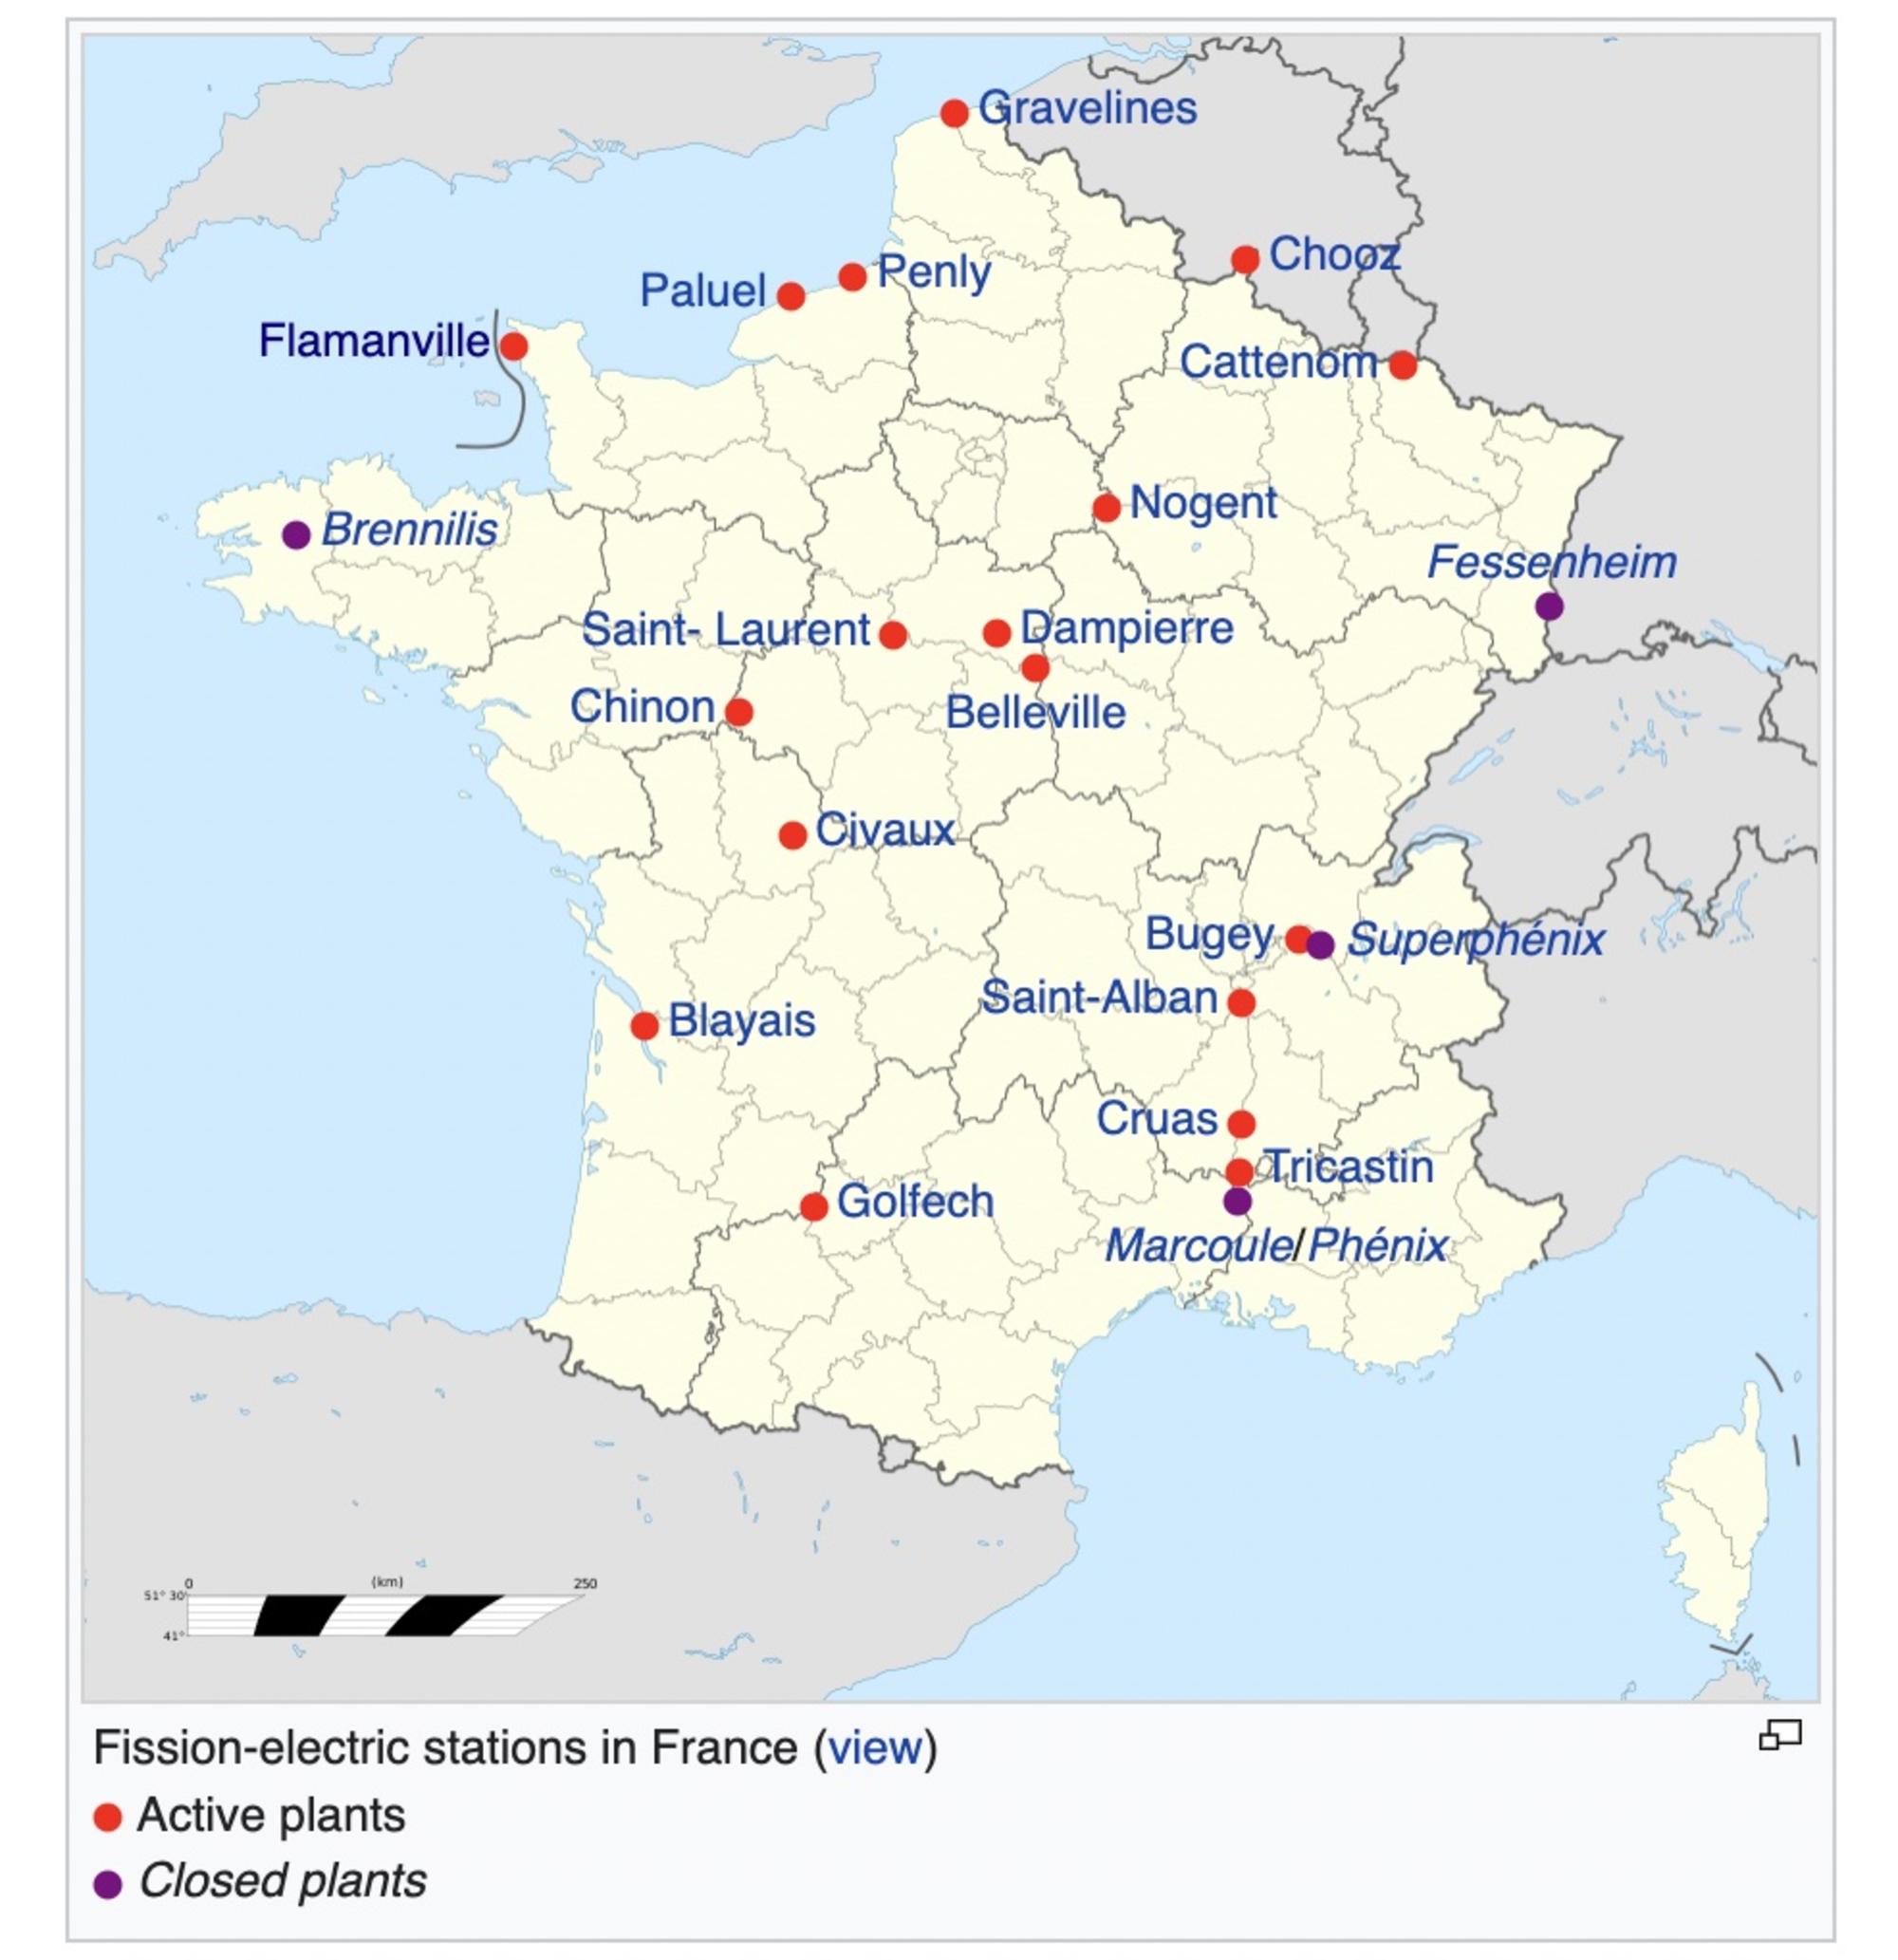 Mapa de las centrales nucleares francesas. Fuente: enriquedans.com